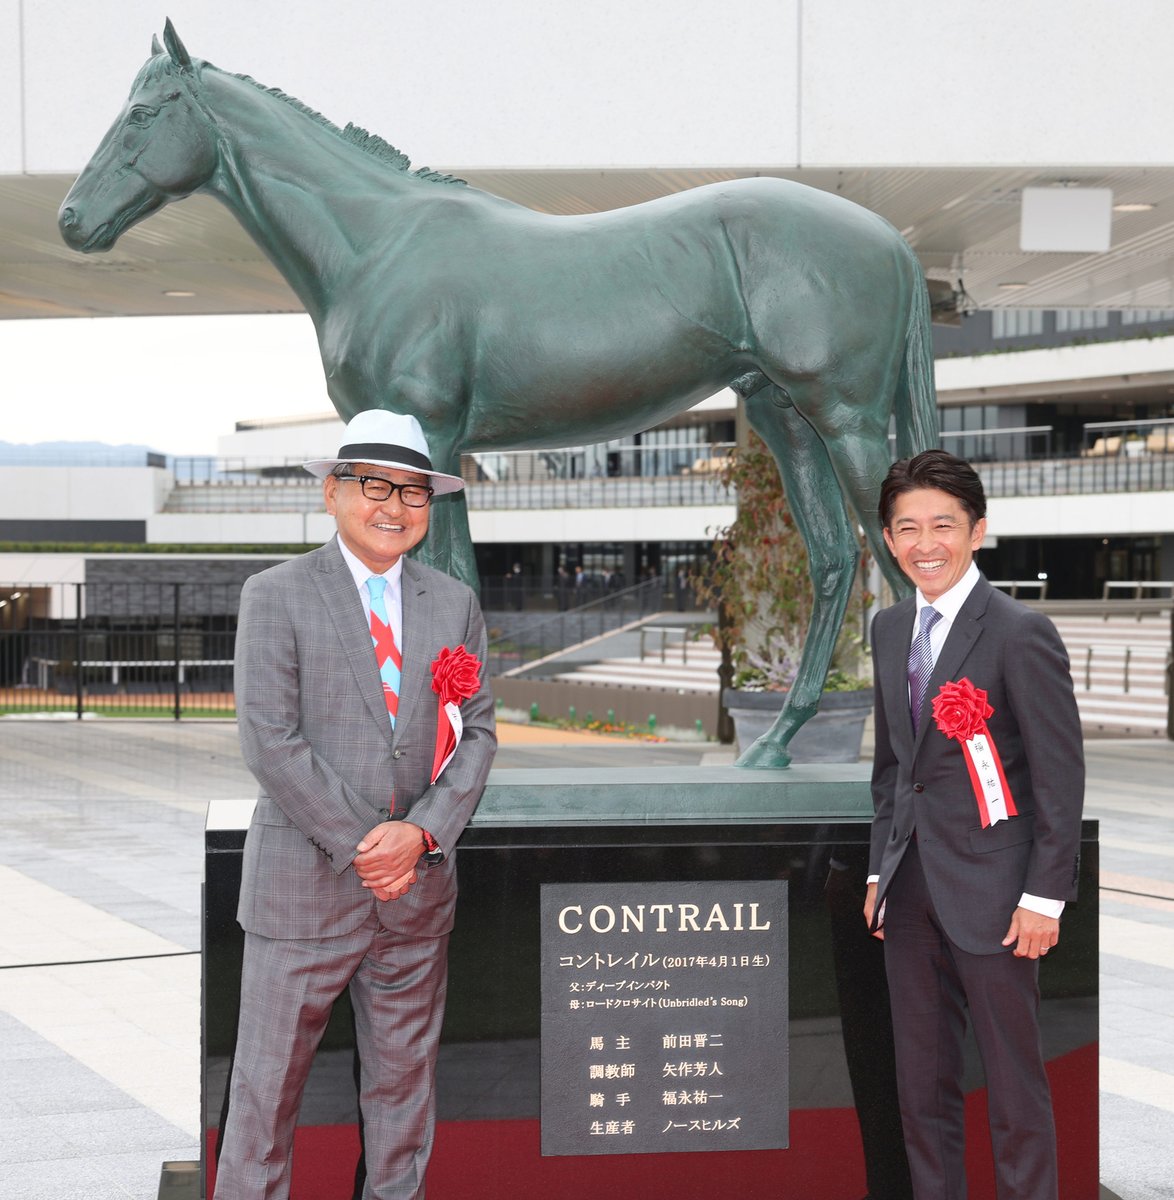 スポニチ競馬Web🐴 on Twitter: "きょう、京都競馬場に寄贈されたコントレイル像の除幕式が行われました。 コントレイル像を背に記念